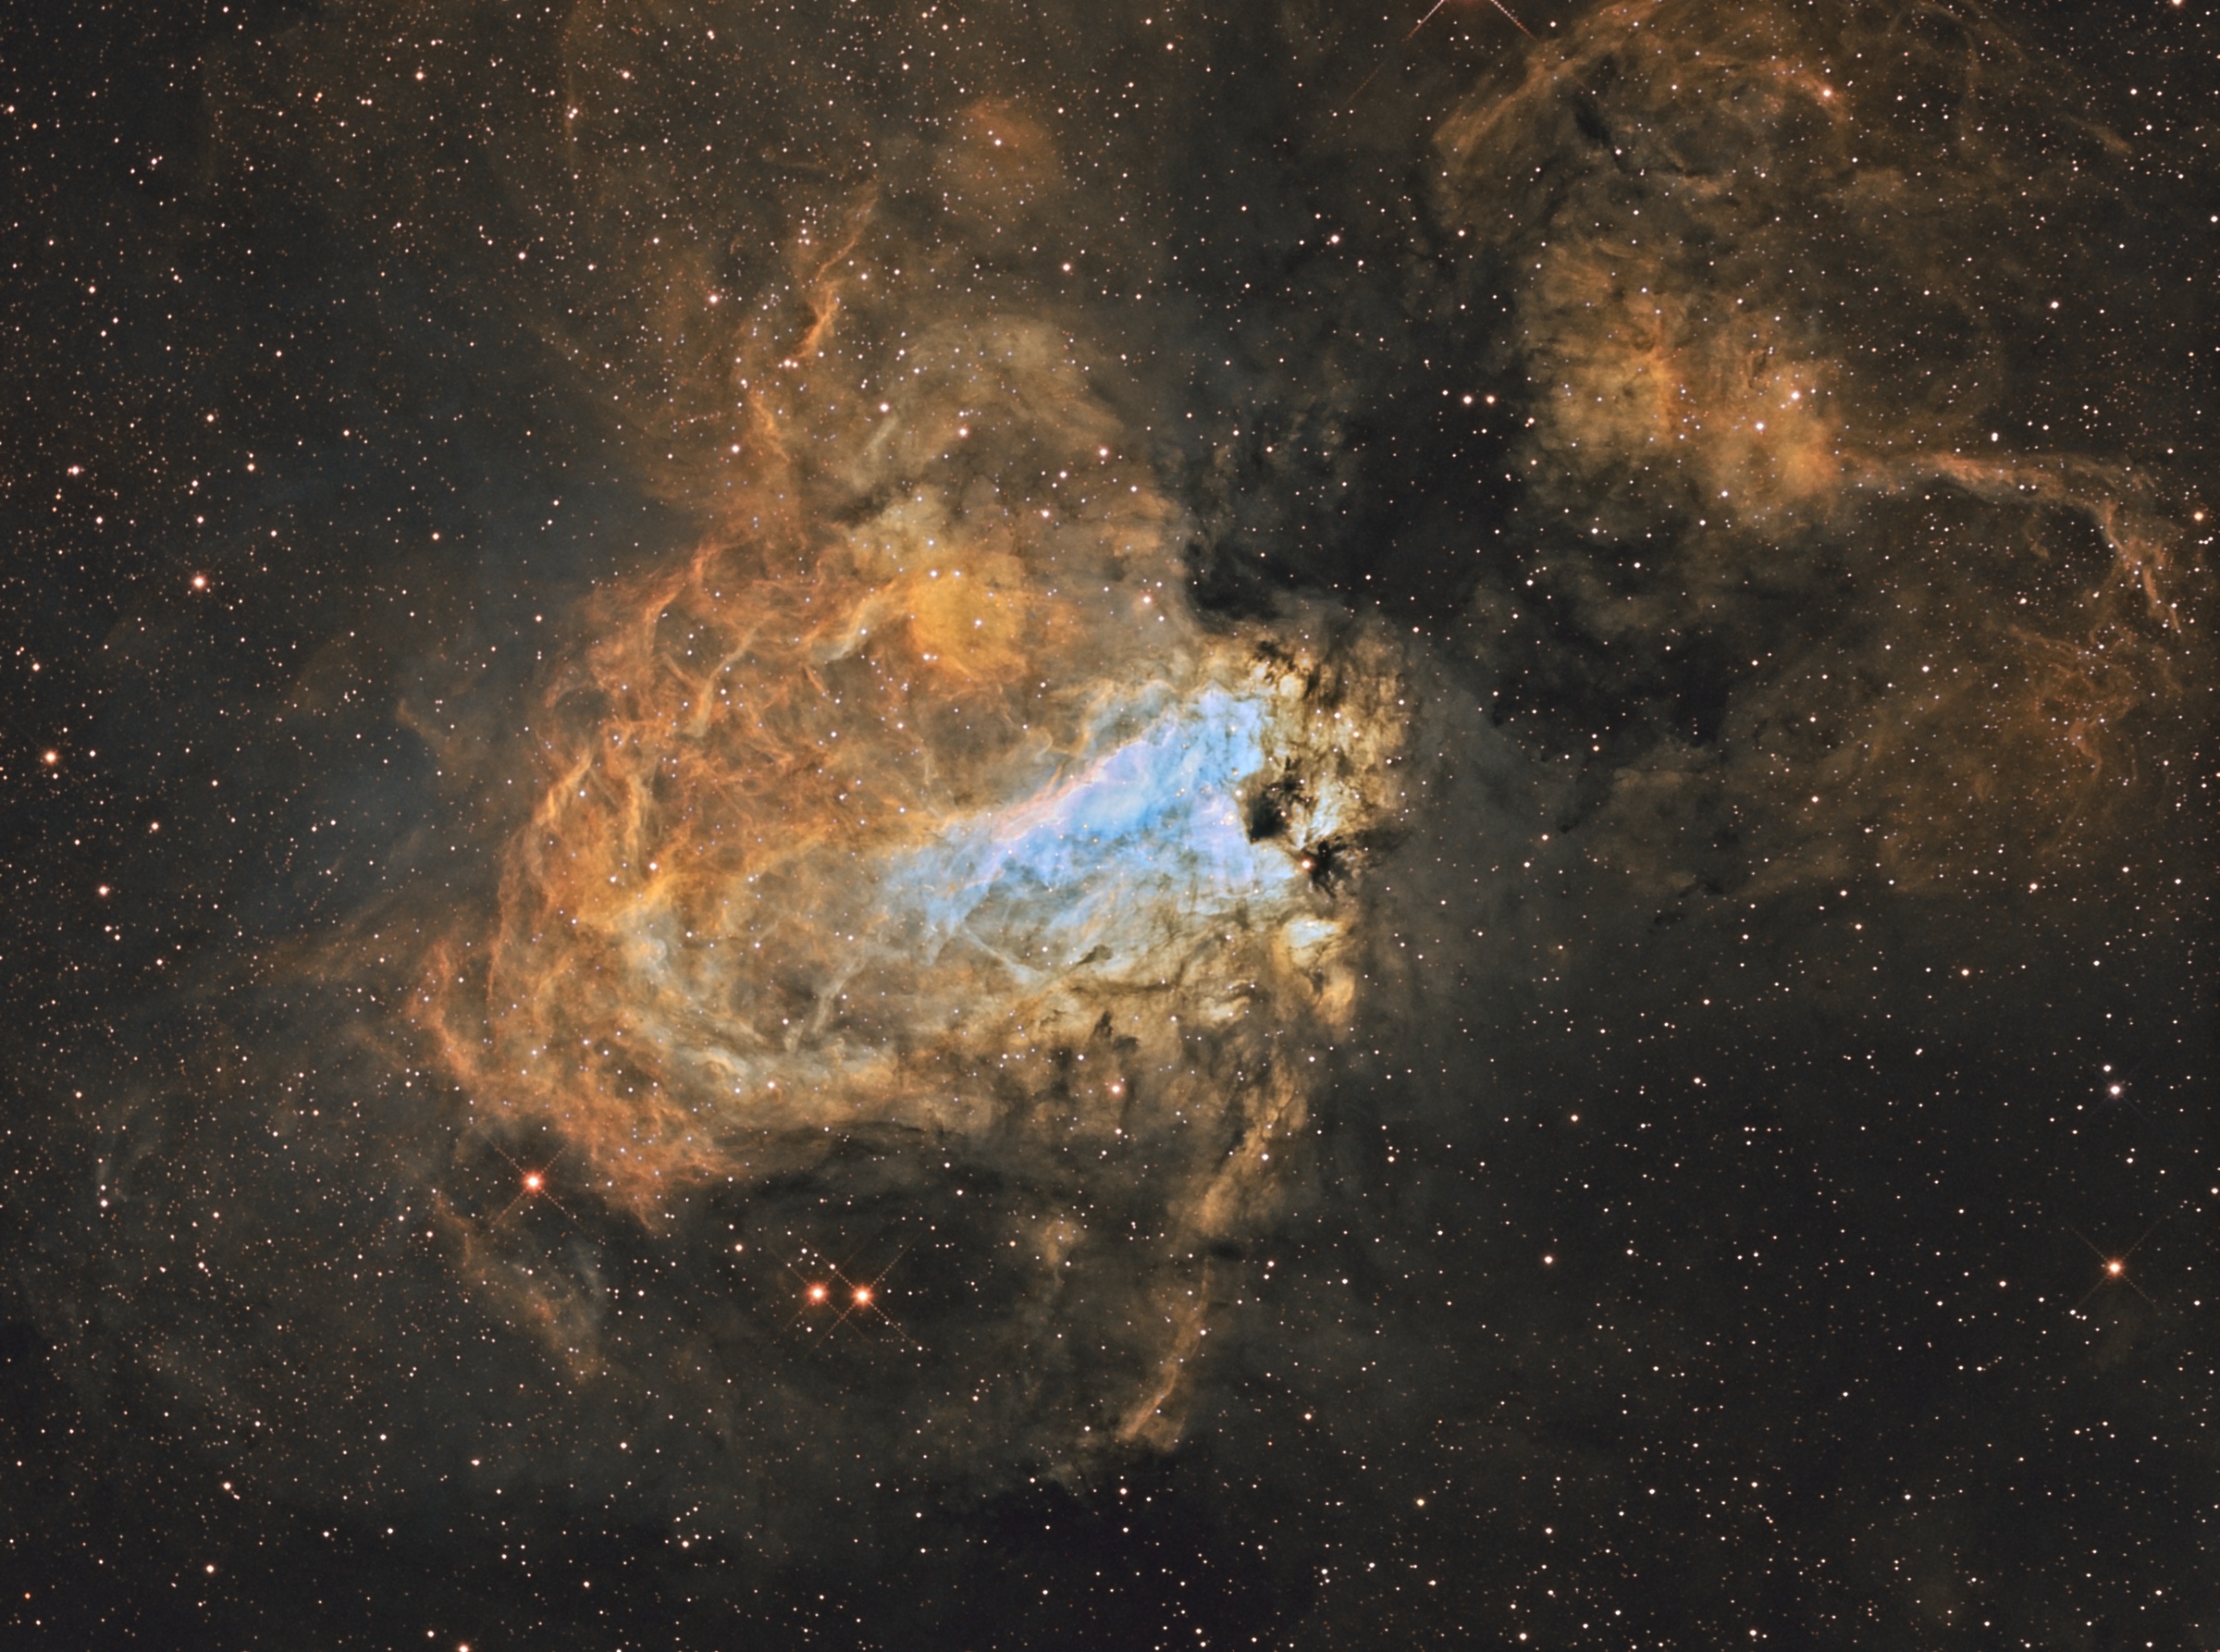 M17 in Sagittarius